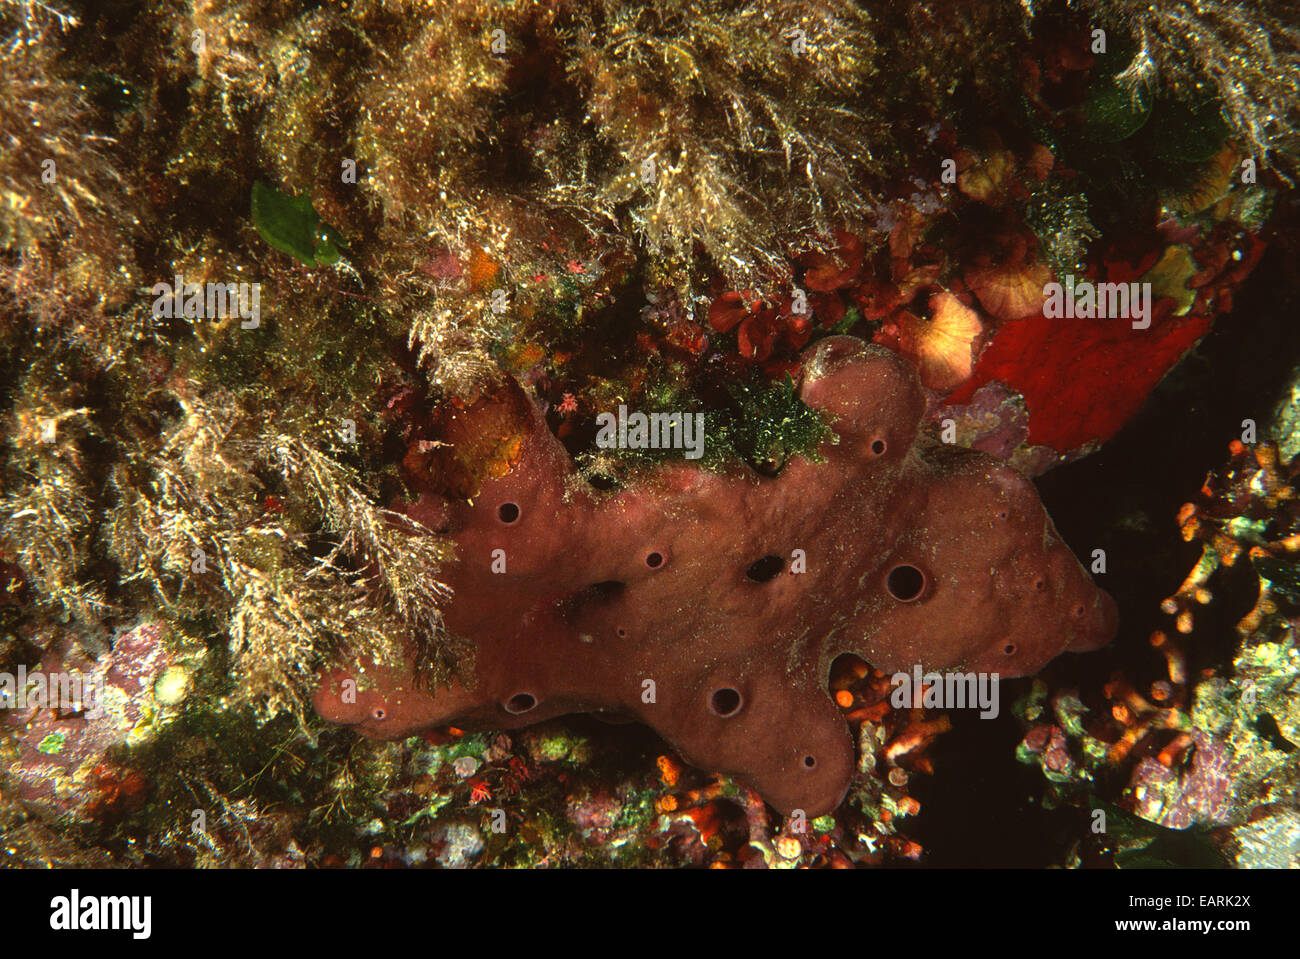 Spugna di mare Petrosia ficiformis, Petrosiidae (Demospongiae), Sinis, Sardegna, Mare Mediterraneo, Italia Foto Stock